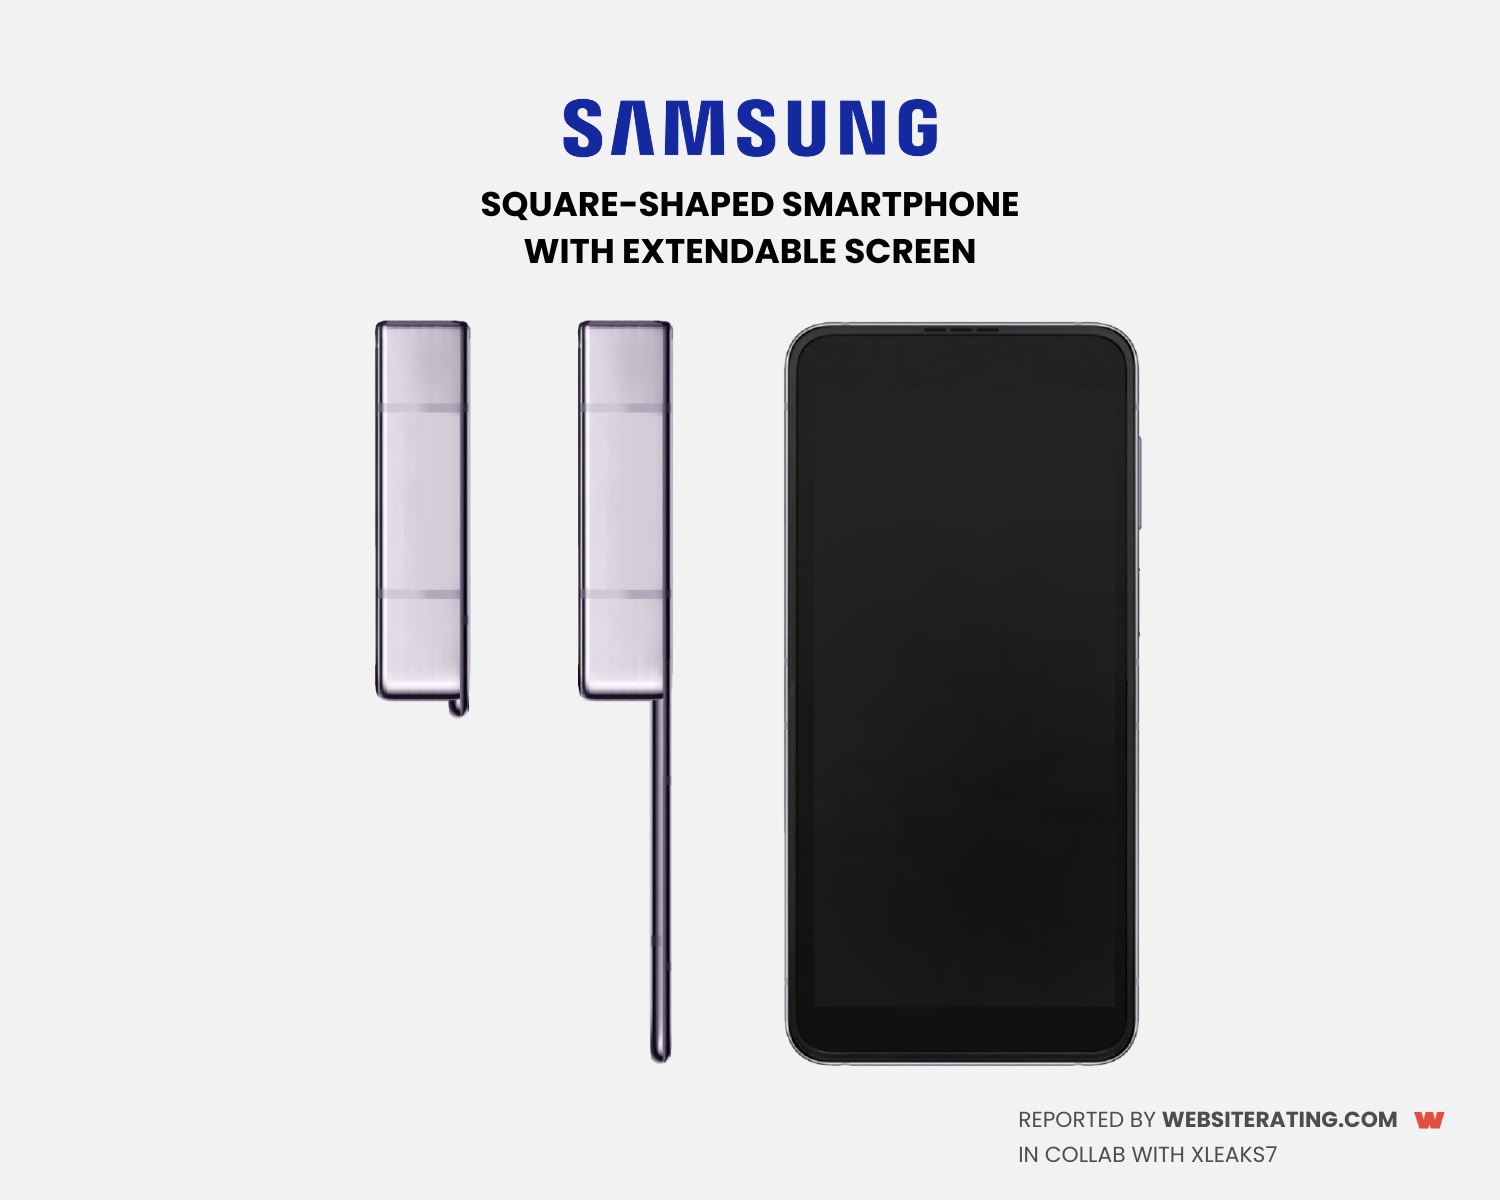 Samsung a breveté un smartphone carré à écran rétractable